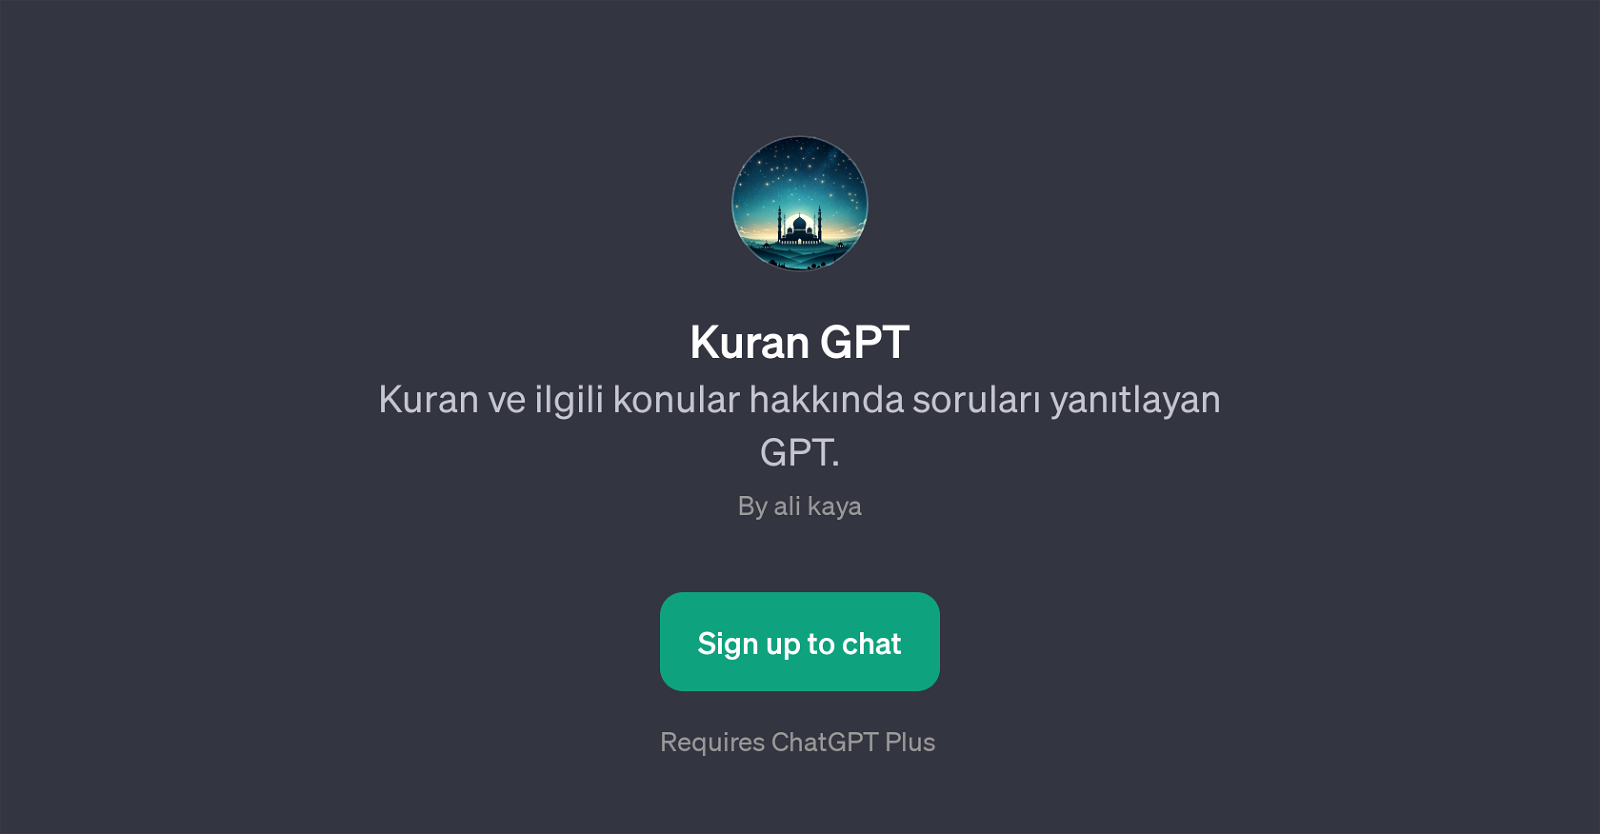 Kuran GPT website